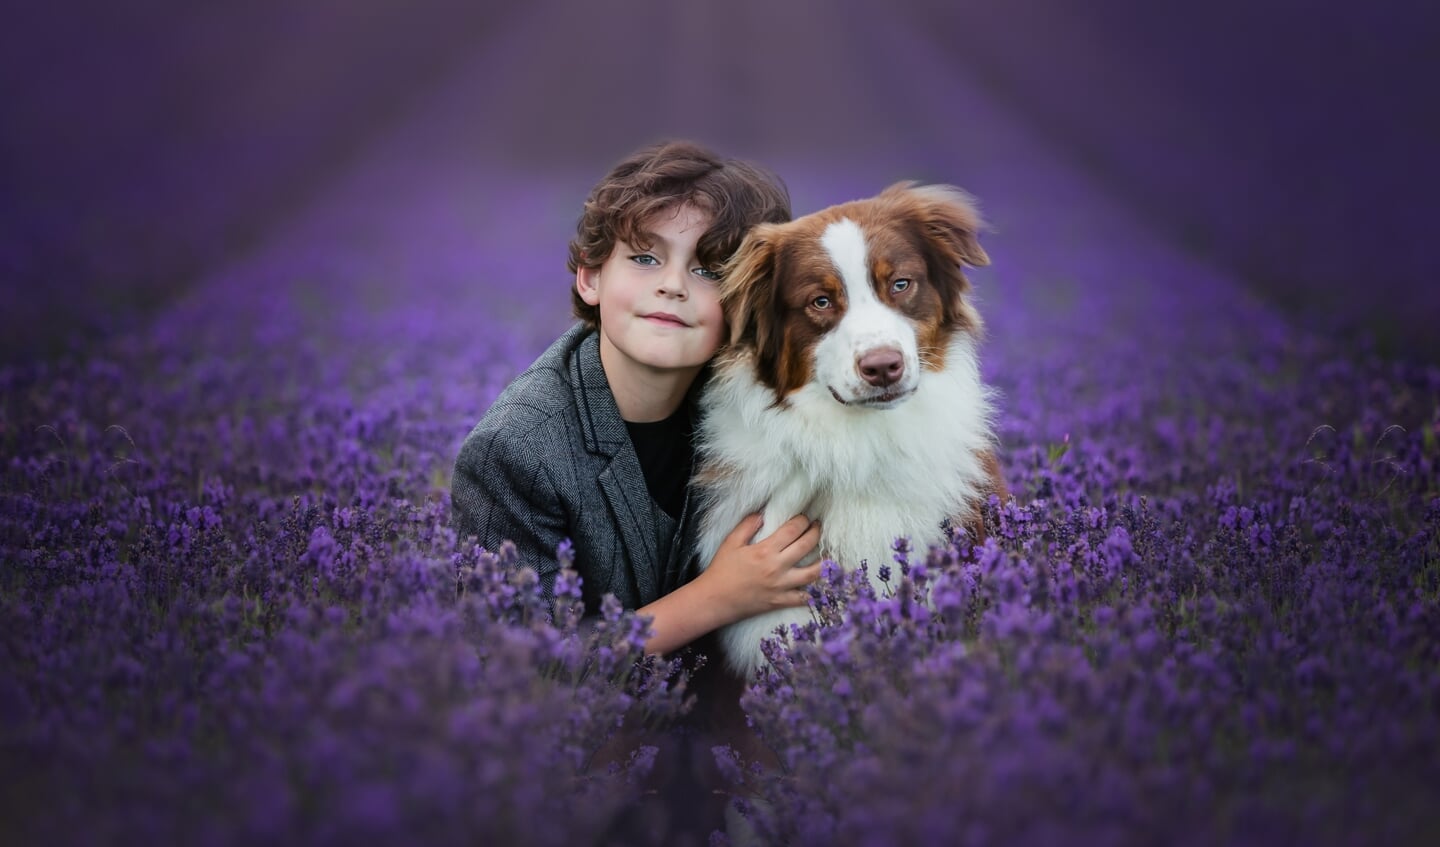 Max te zien in het lavendelveld bij Lady
Lavendel, in Noordwijk, samen met zijn hond, een
Australian Shepherd, Bumper. Het lijkt wel de Provence.